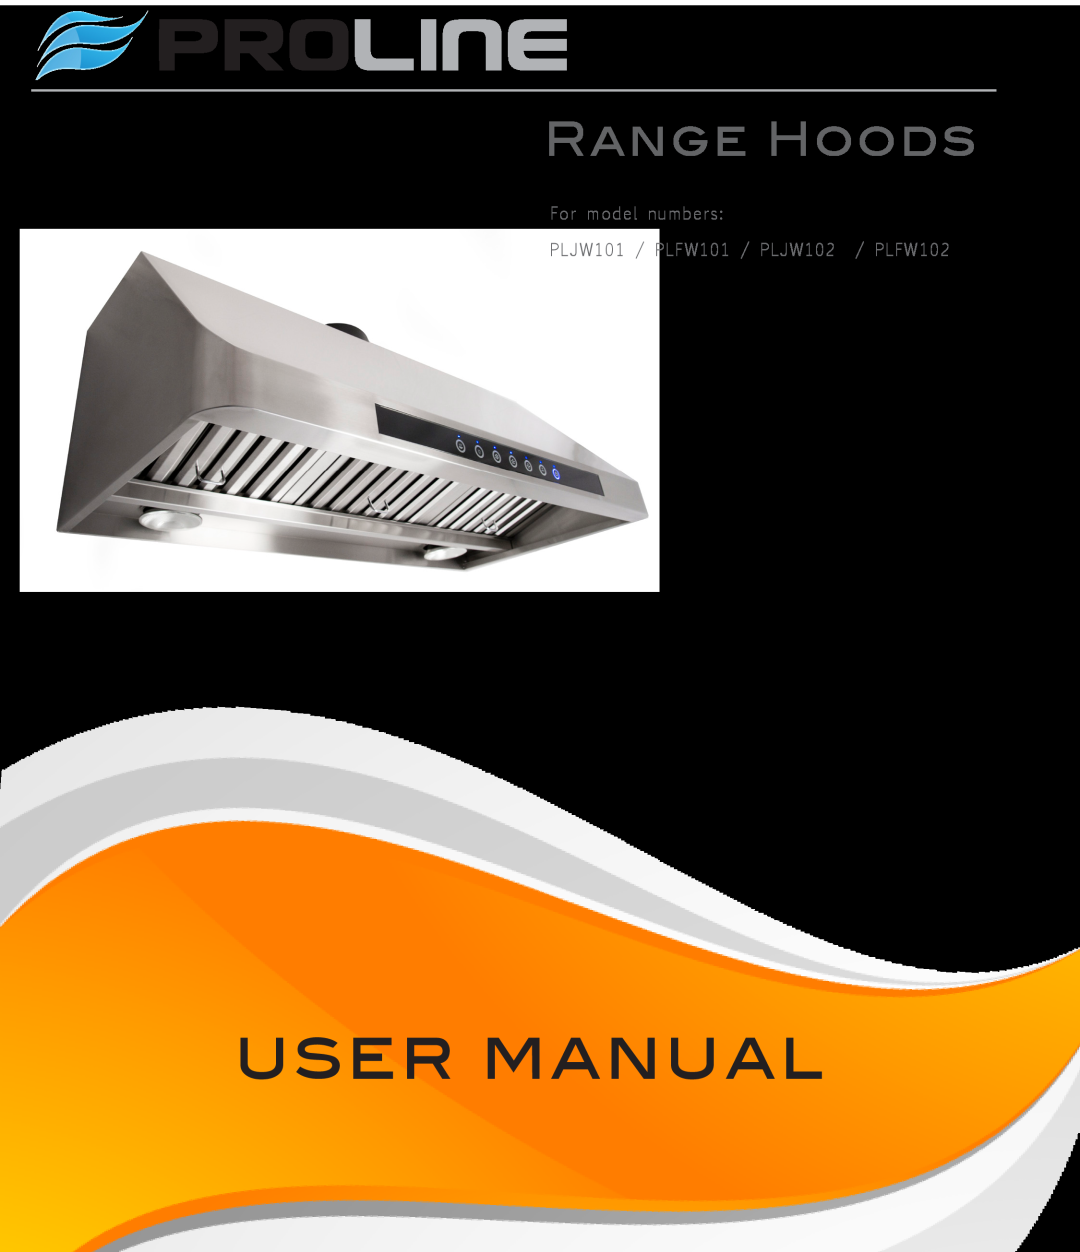 Proline user manual Proline, Range Hoods, For model numbers PLJW101 / PLFW101 / PLJW102 / PLFW102 